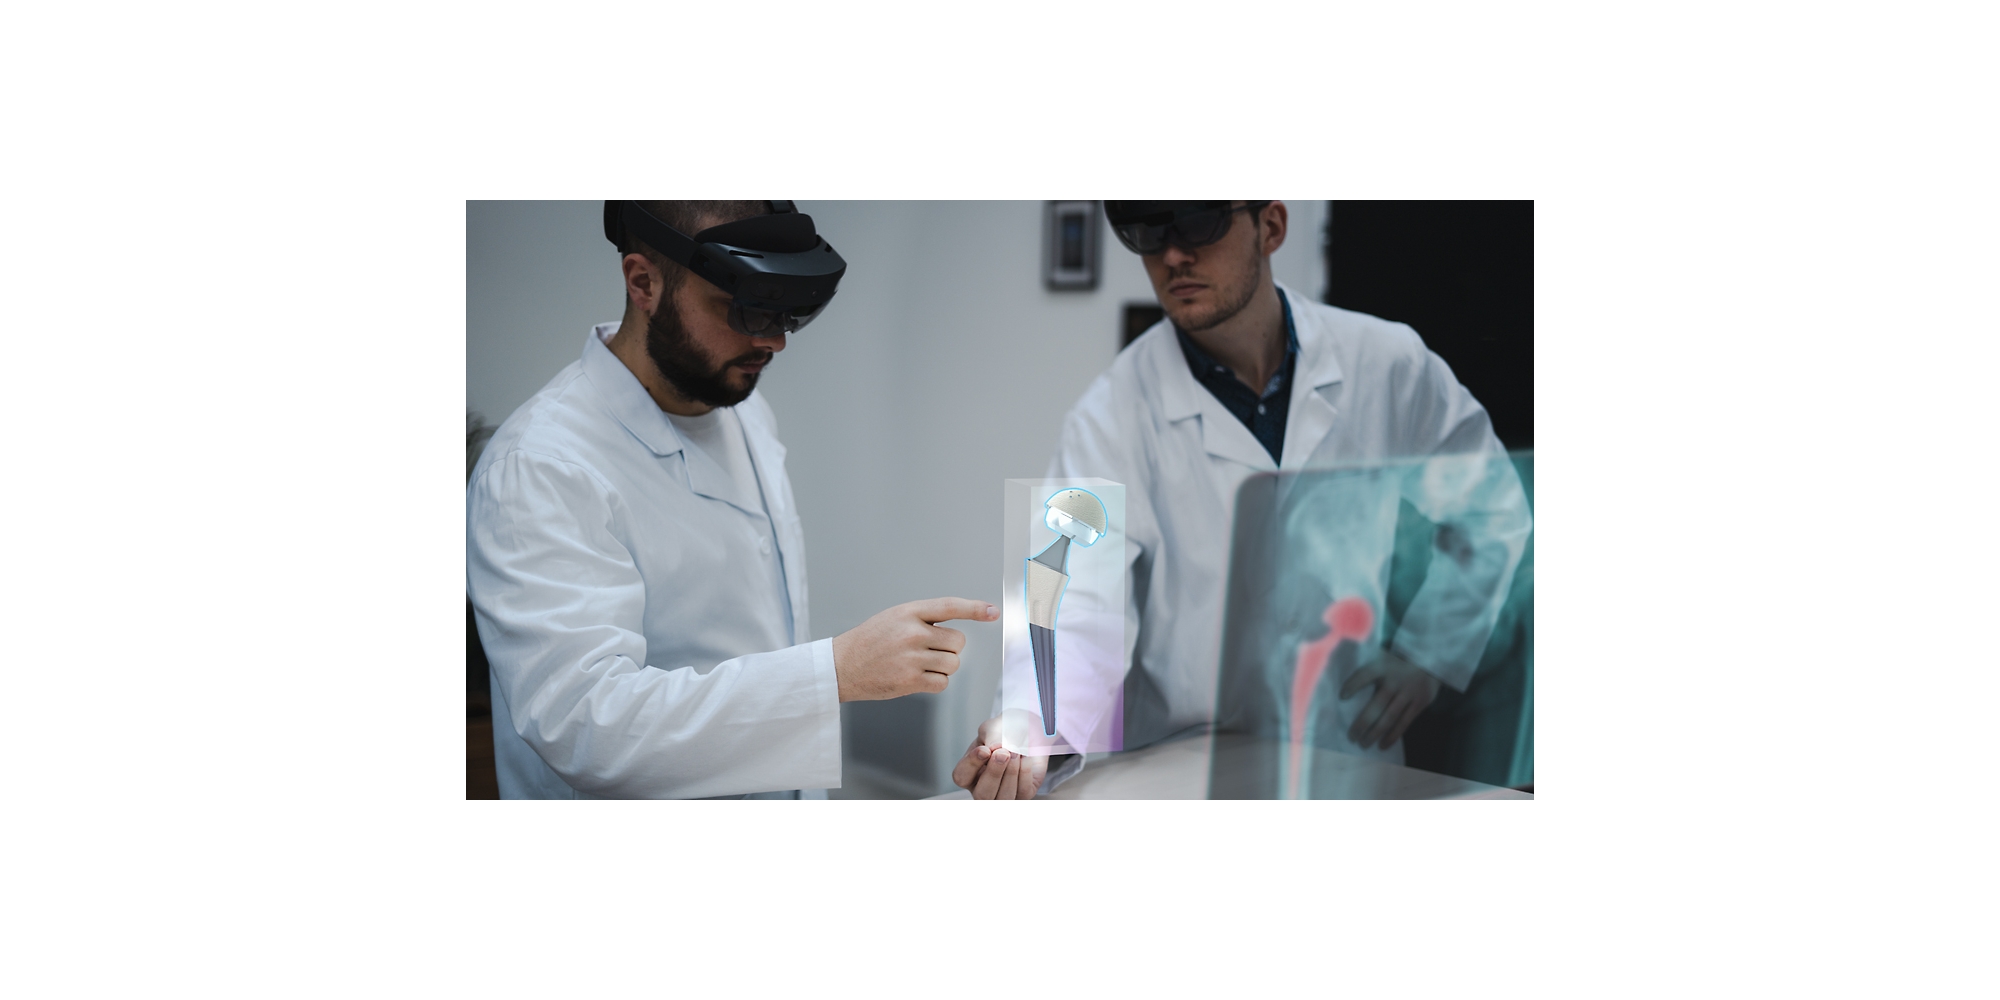 اثنان من المتخصصين في الرعاية الصحية يستخدمان أجهزة HoloLens 2 لإلقاء نظرة على الأشعة السينية في الواقع المختلط.